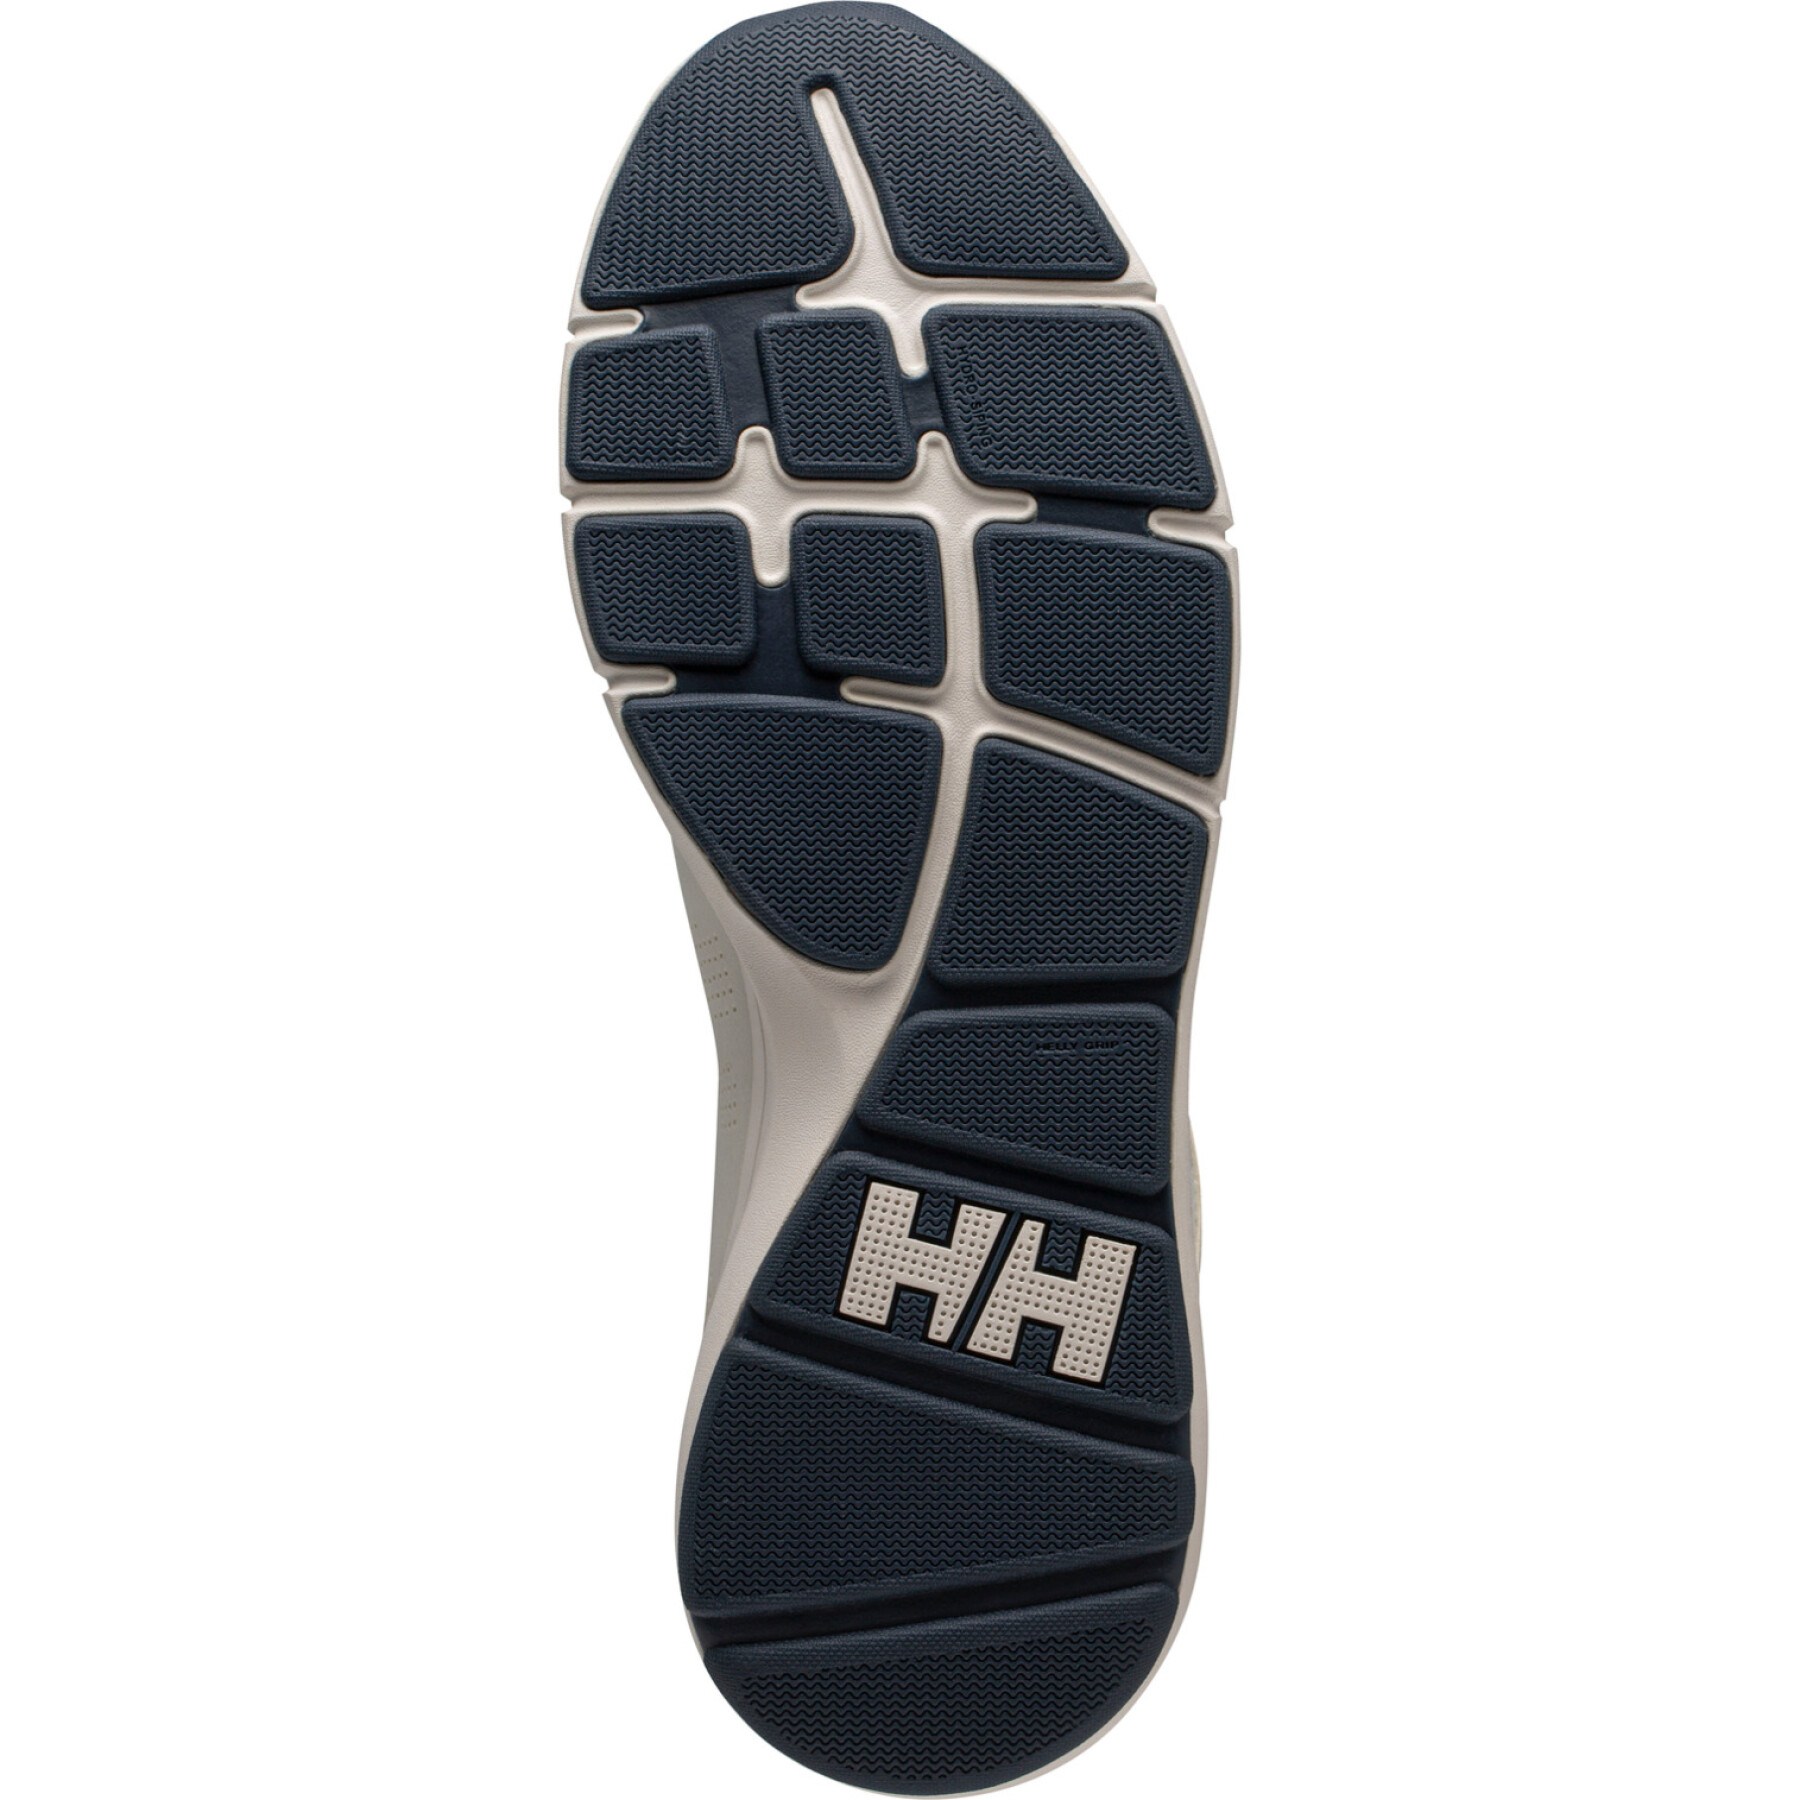 Aquatic shoes Helly Hansen Ahiga V4 Hydropower